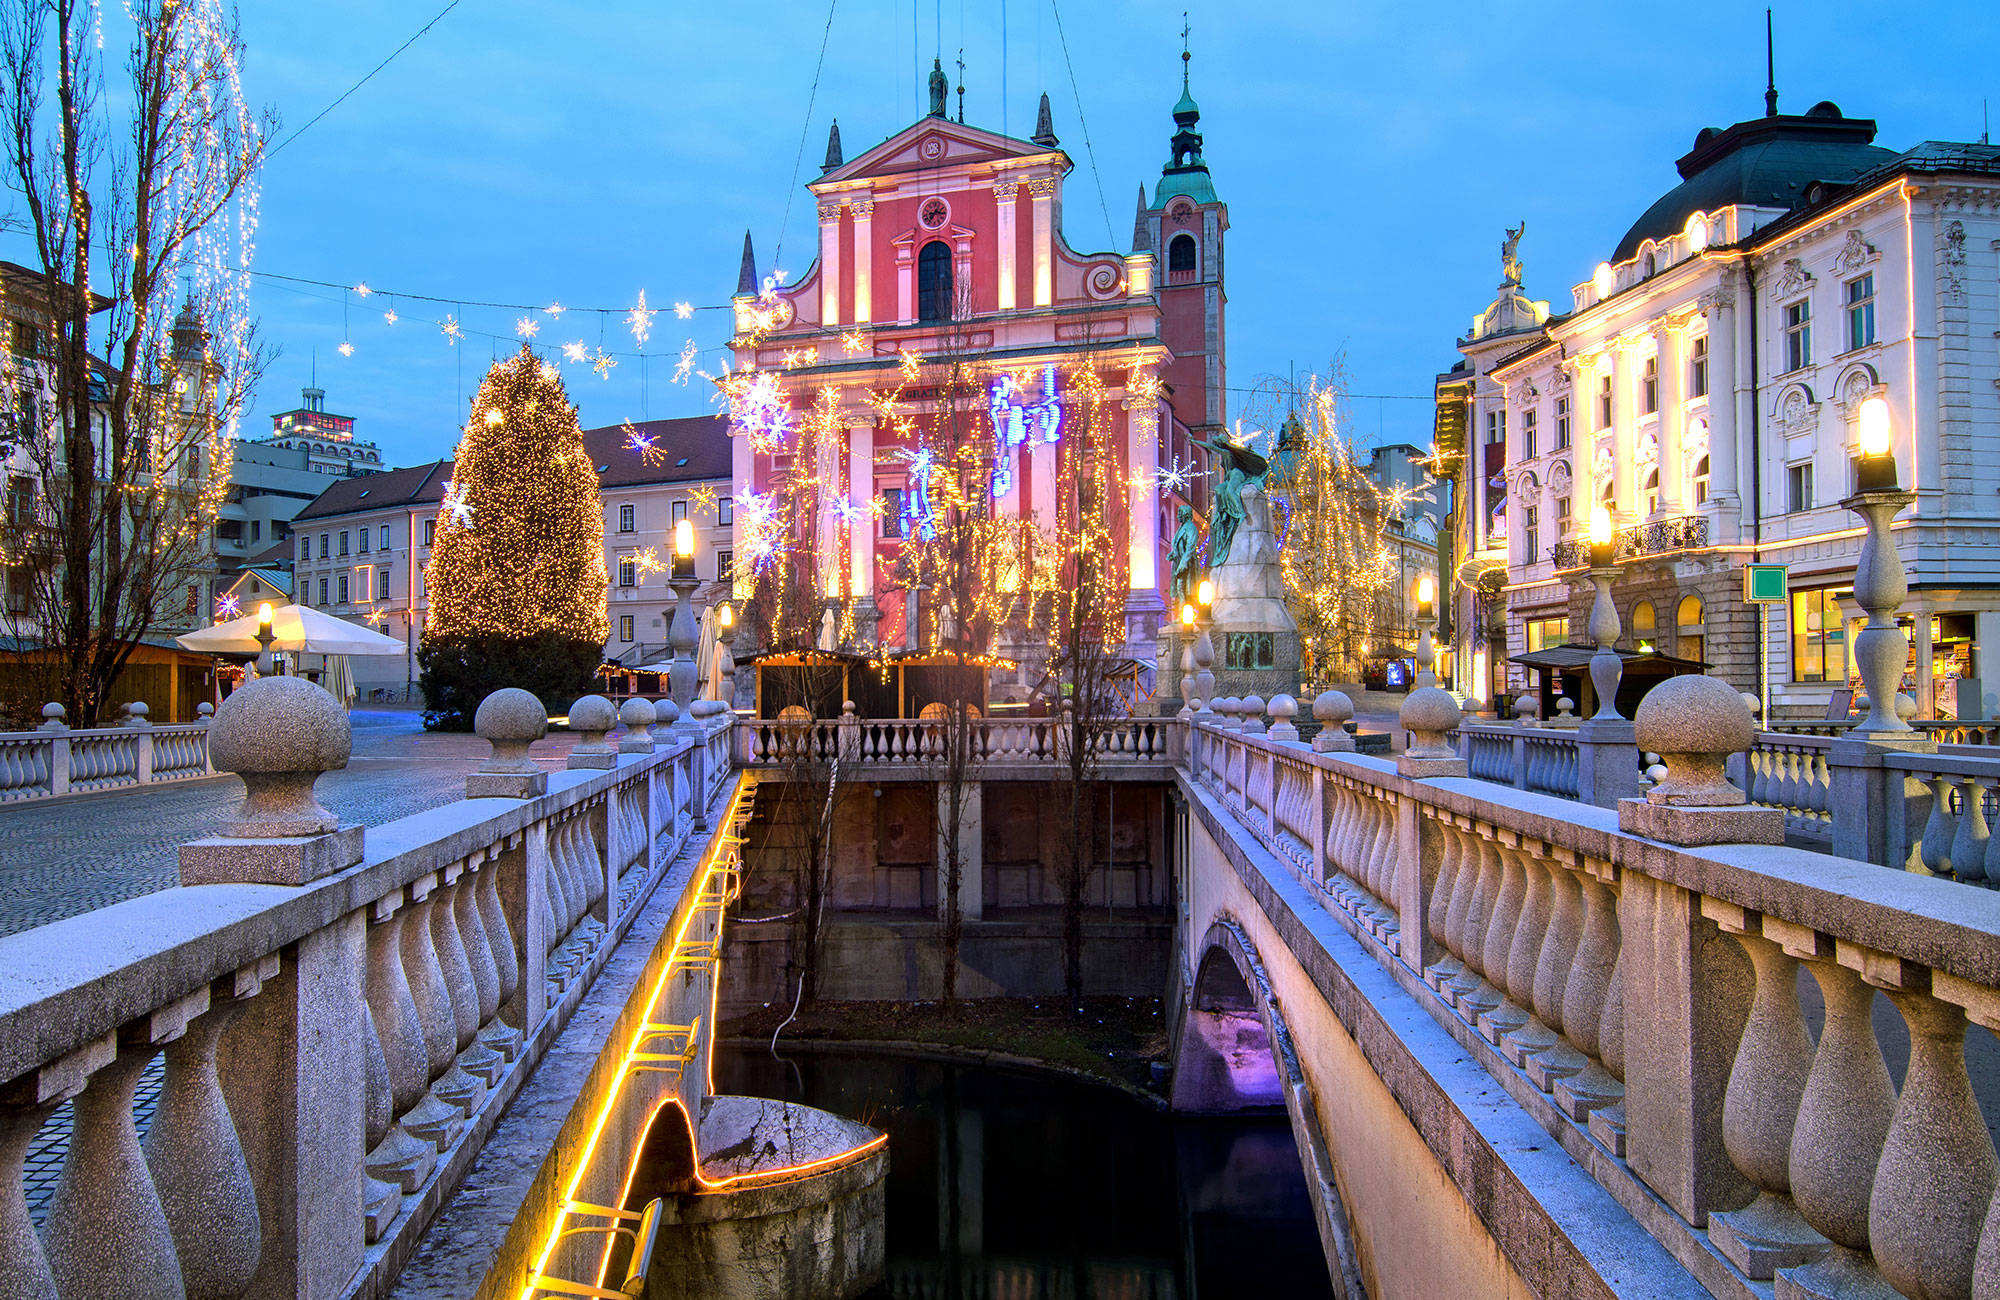 julbelysning på en byggnad i ljubljana i slovenien